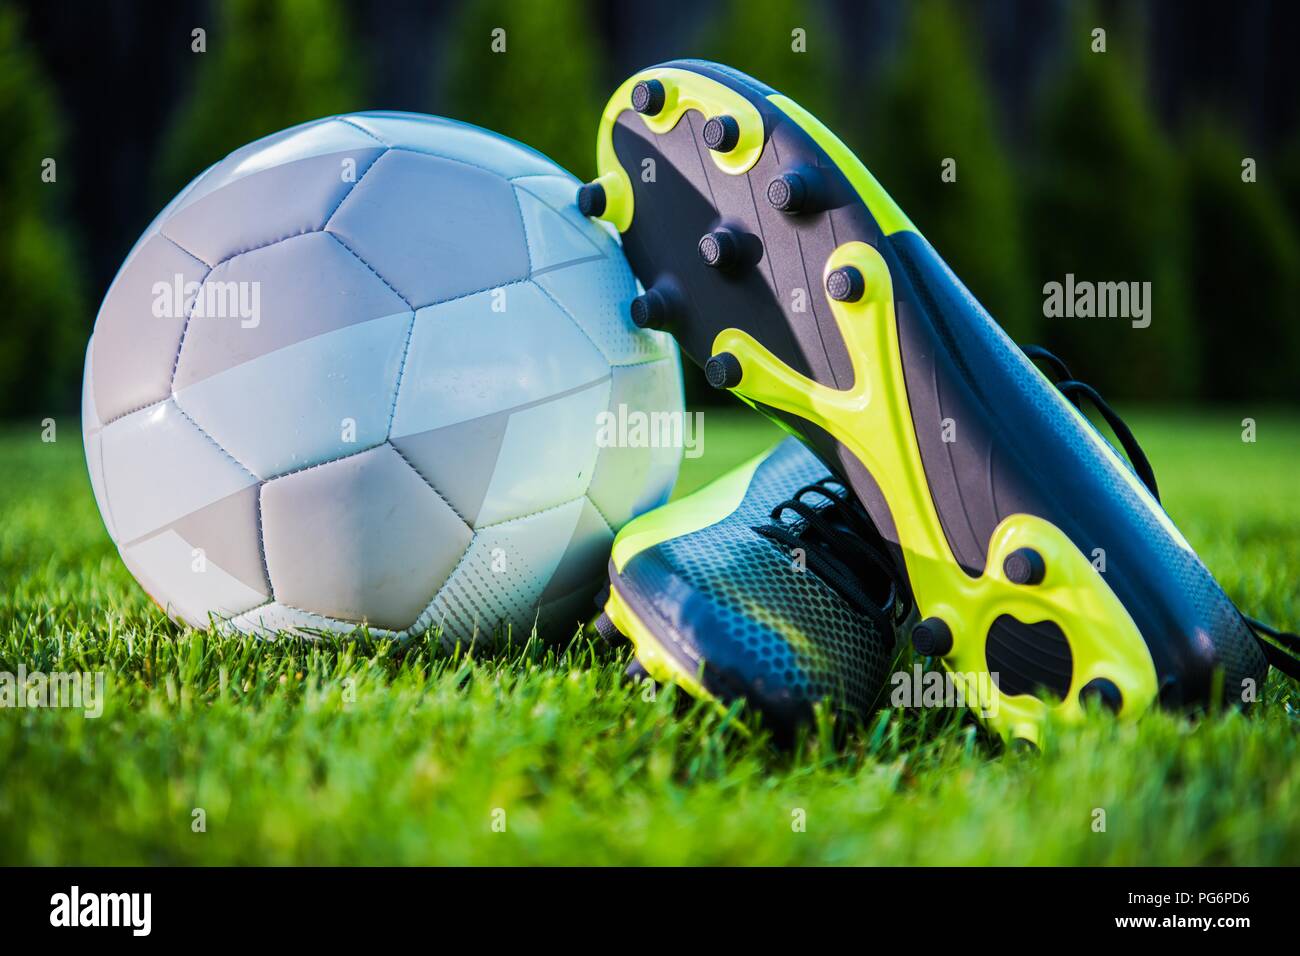 Torneo de Fútbol Moderno concepto con una pelota de fútbol y jugador de los tacos de los zapatos. Tema de deportes de equipo. Foto de stock